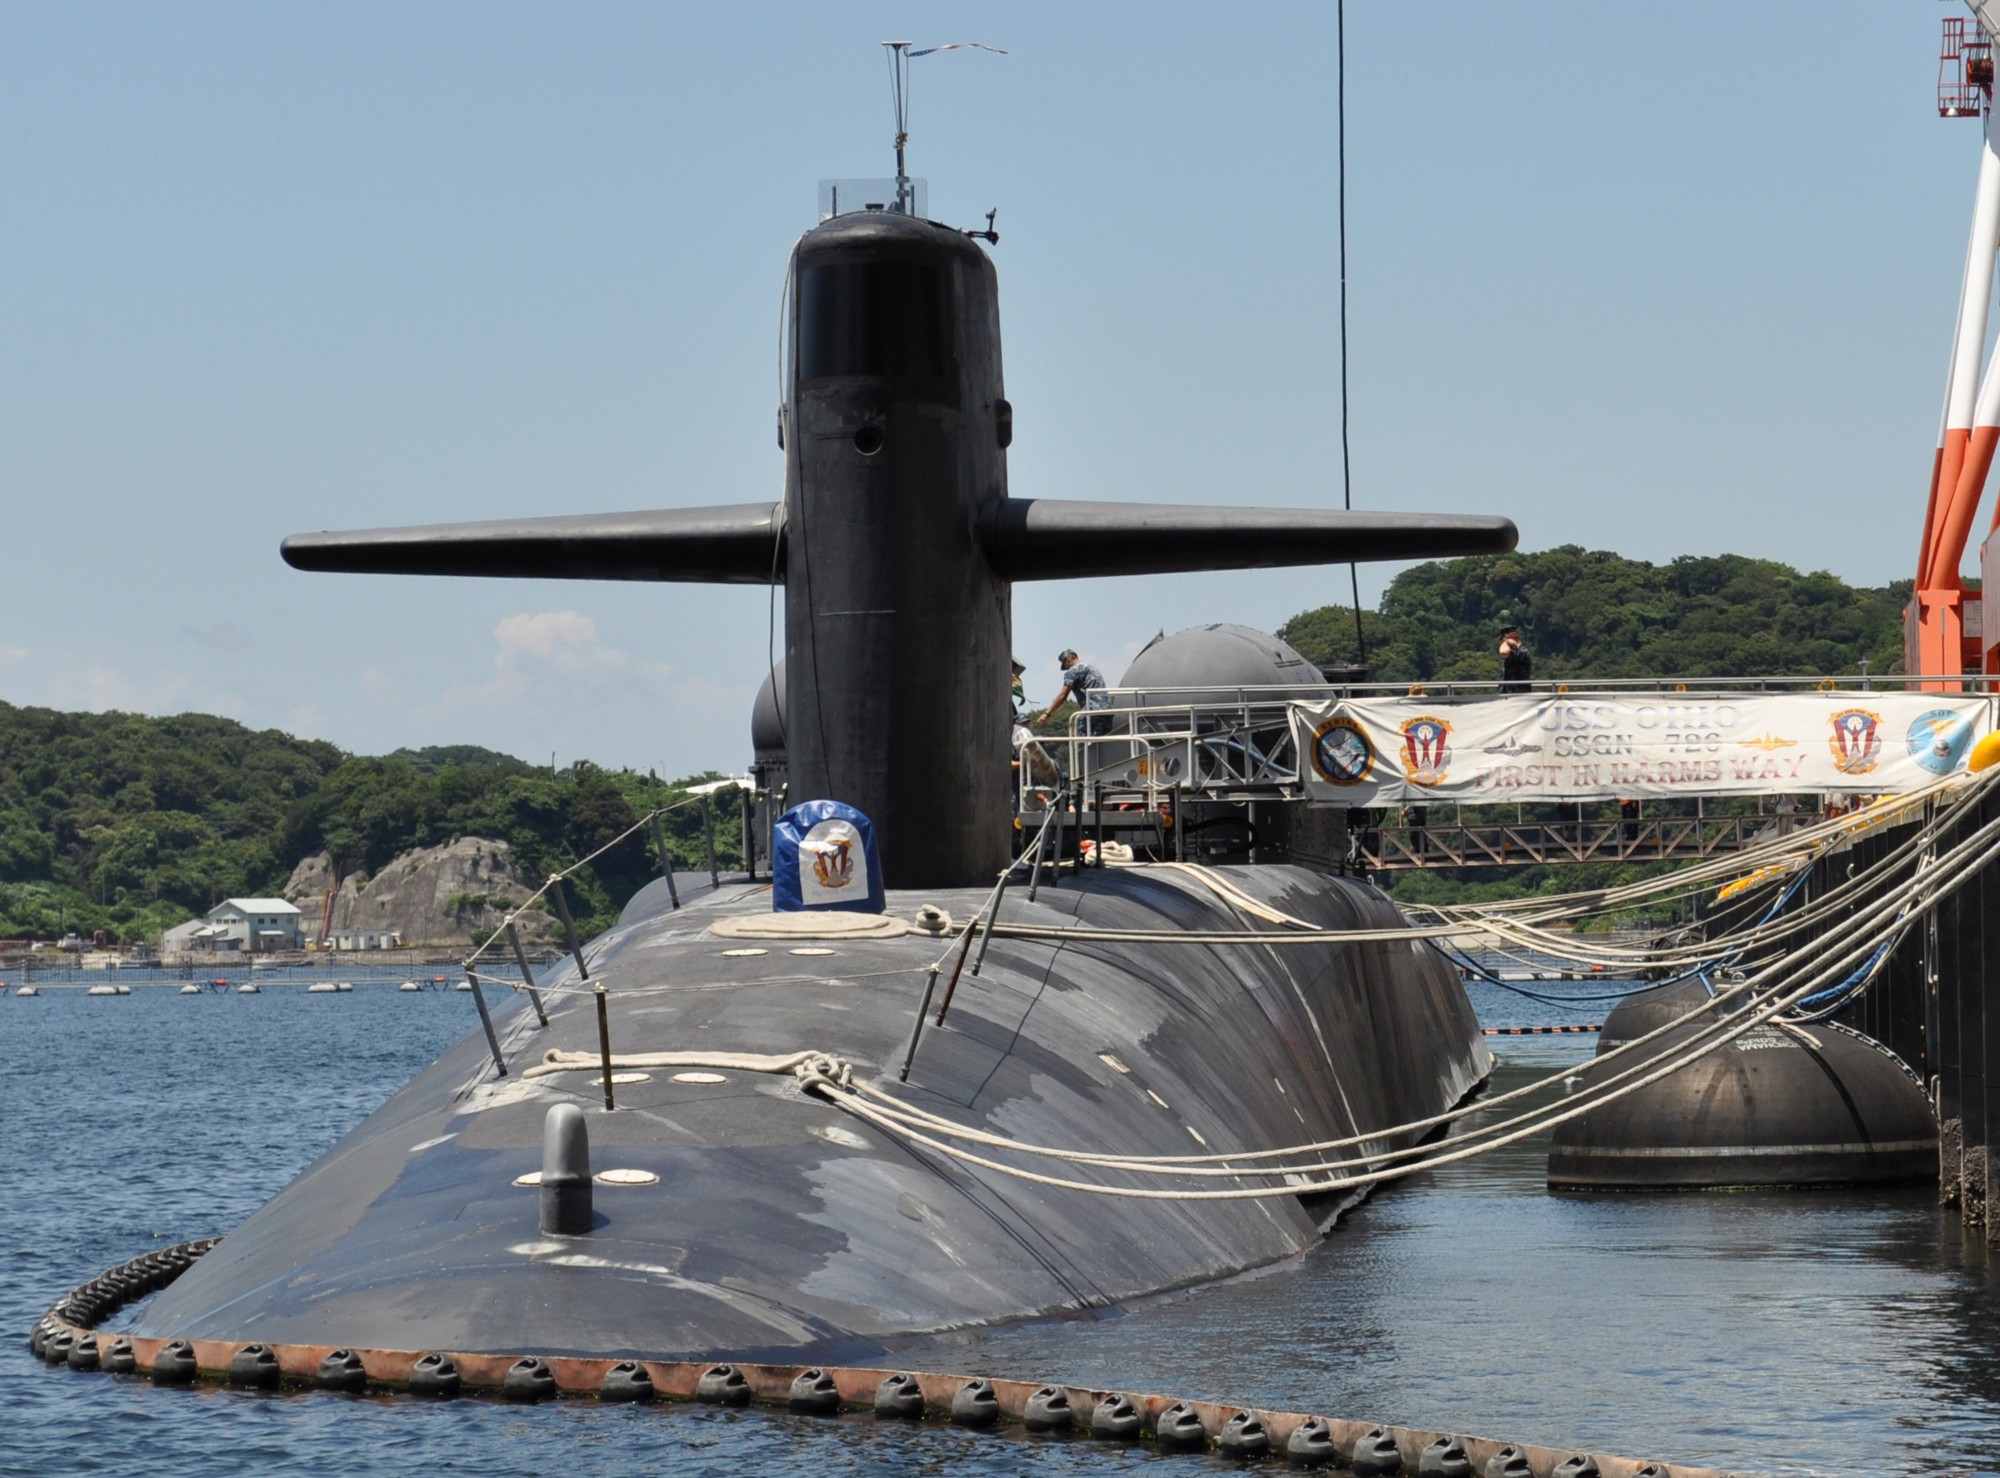 ssgn-726 uss ohio guided missile submarine us navy 2011 33 yokosuka japan